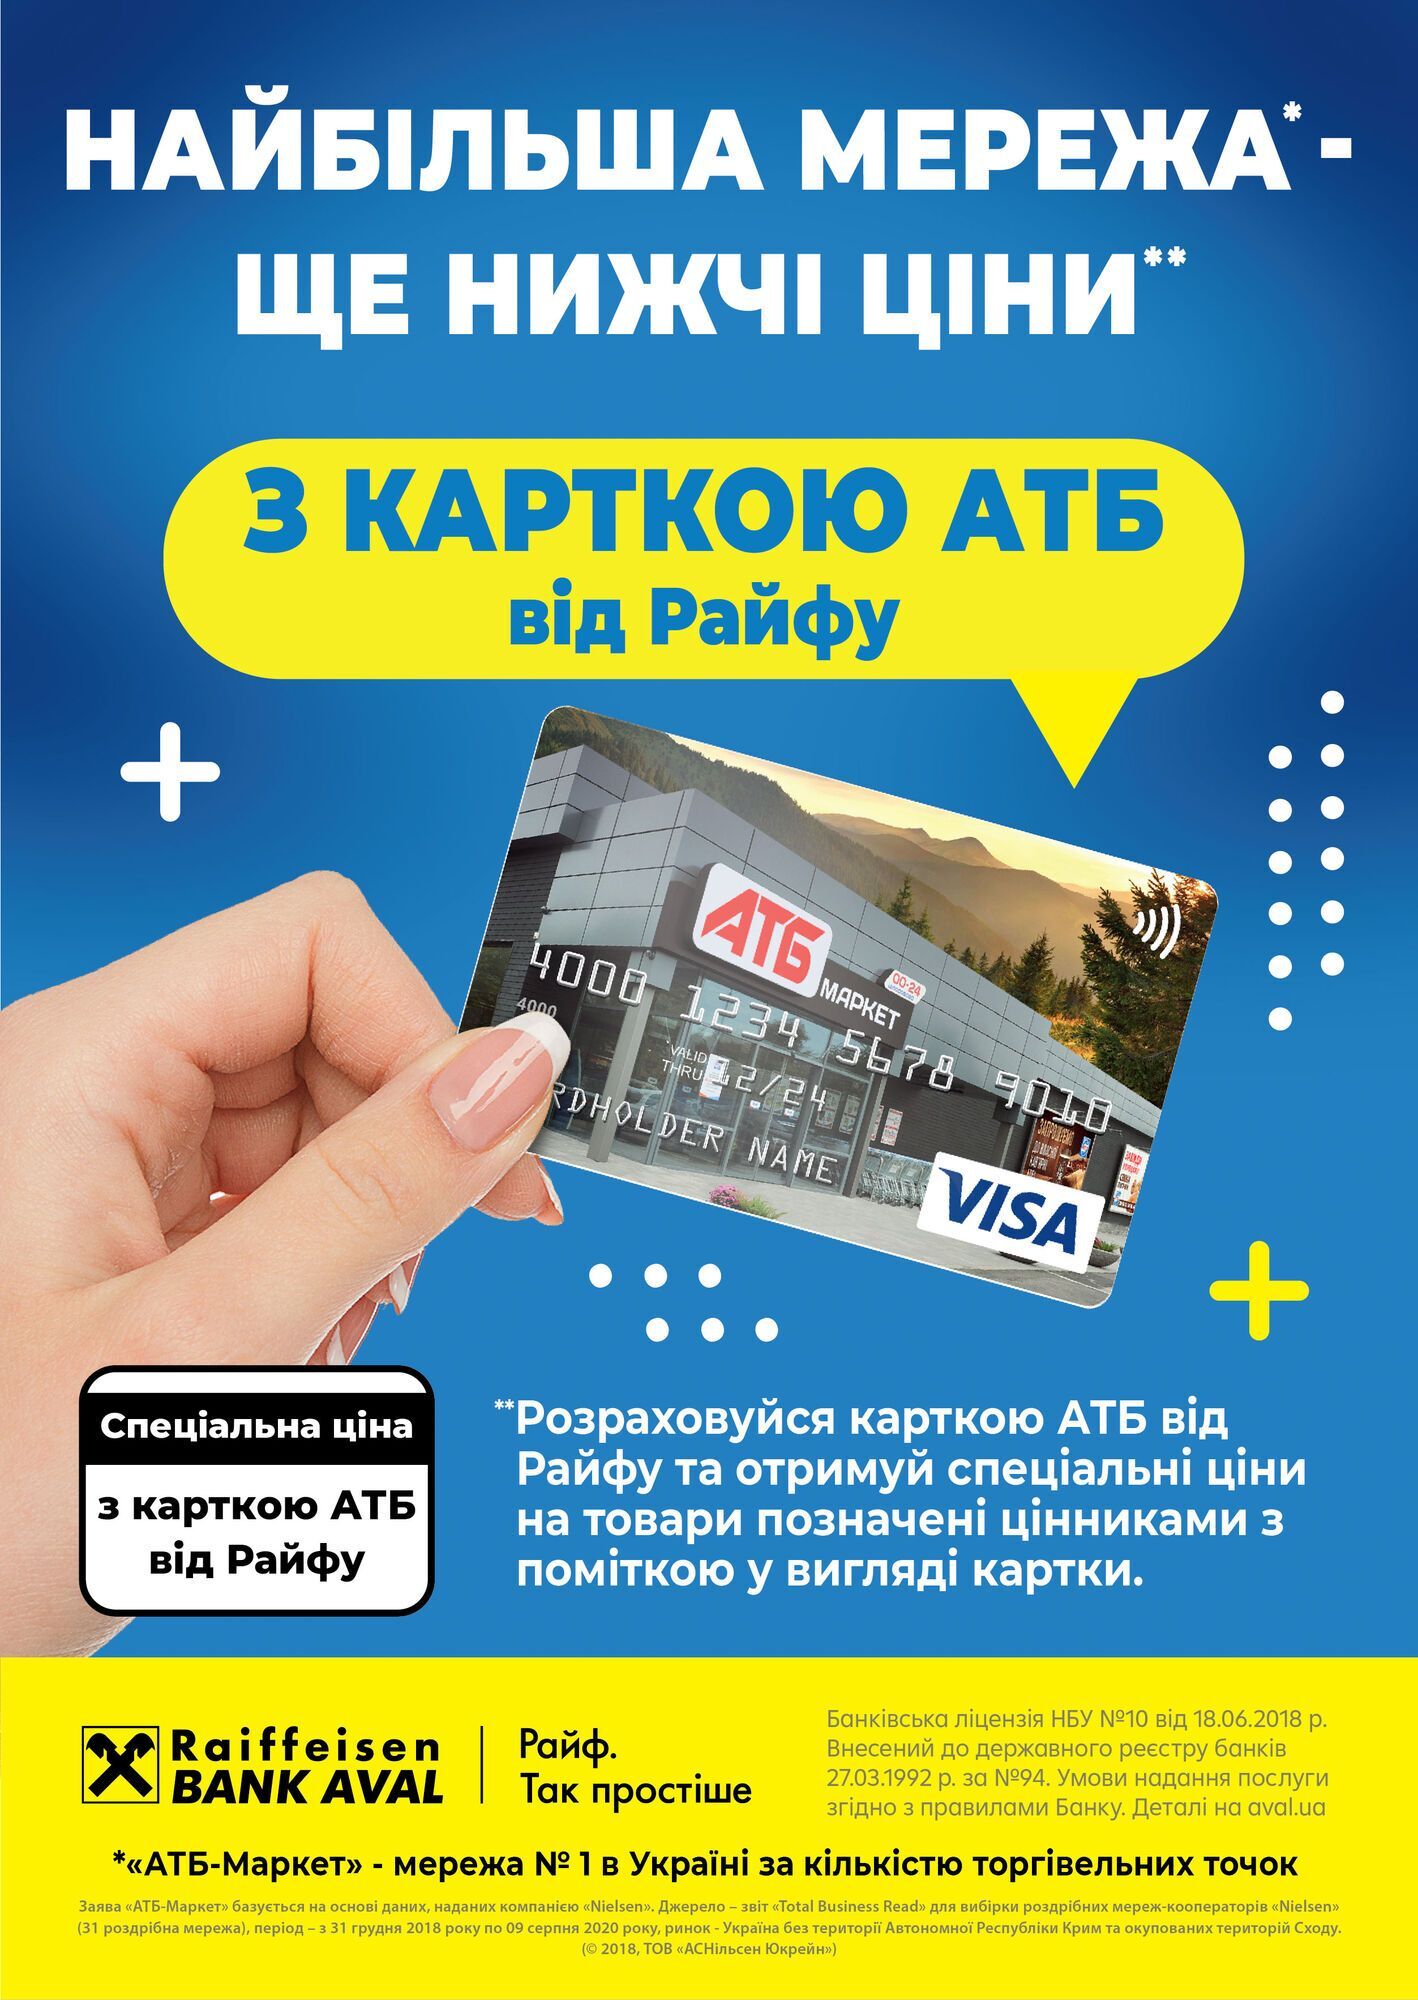 Потенціал випуску карток "АТБ" в Україні становить близько 20 мільйонів штук